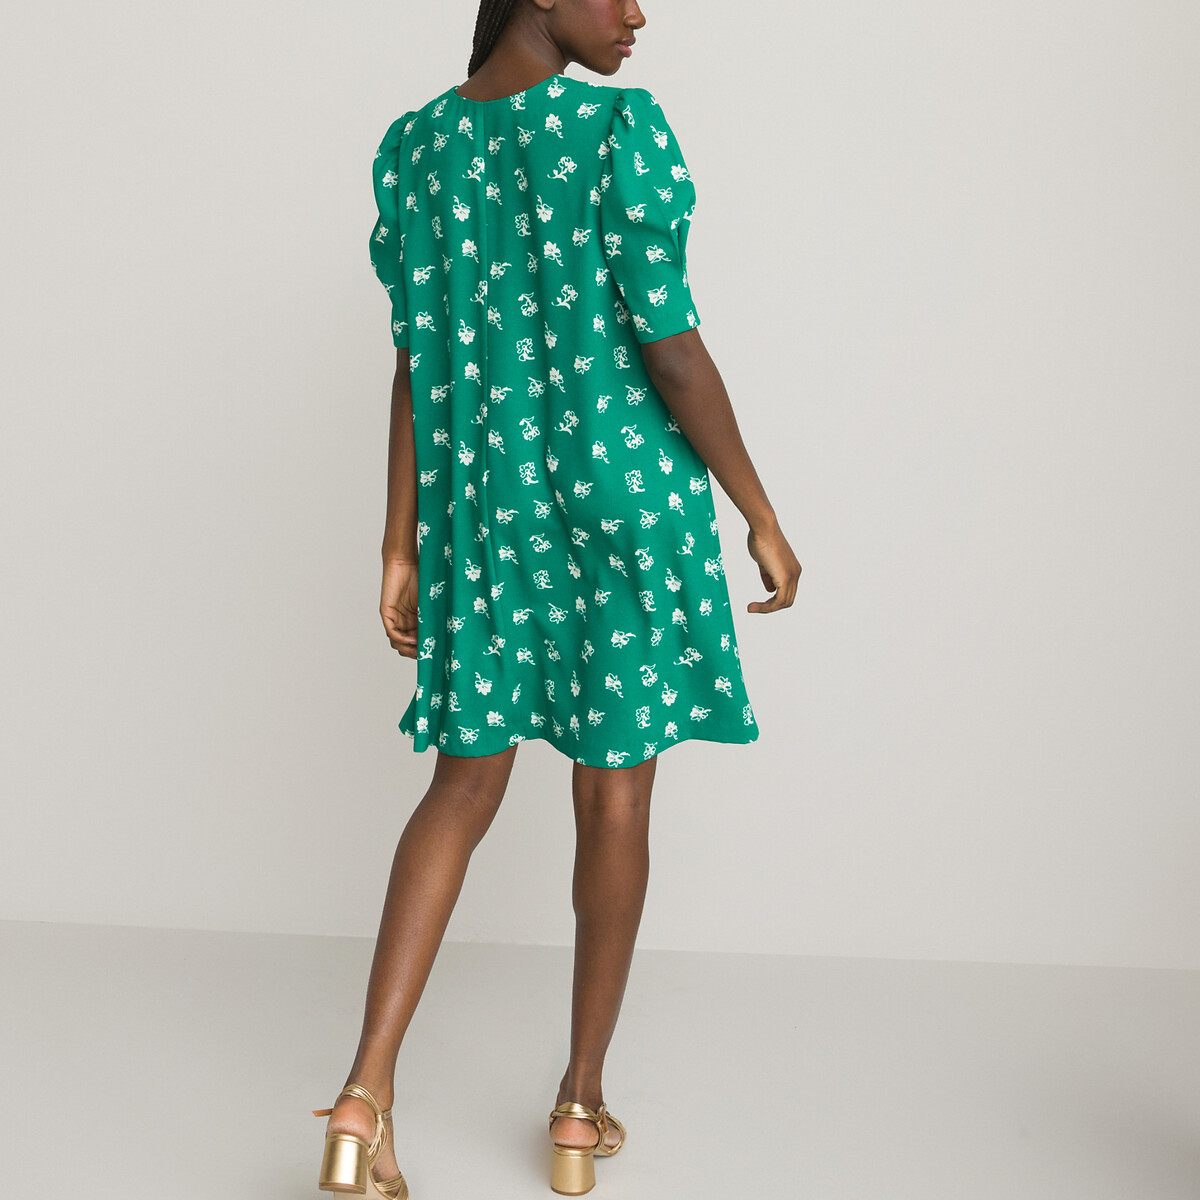 Платье Расклешенное с V-образным вырезом короткими рукавами и принтом 52 зеленый LaRedoute, размер 52 - фото 4